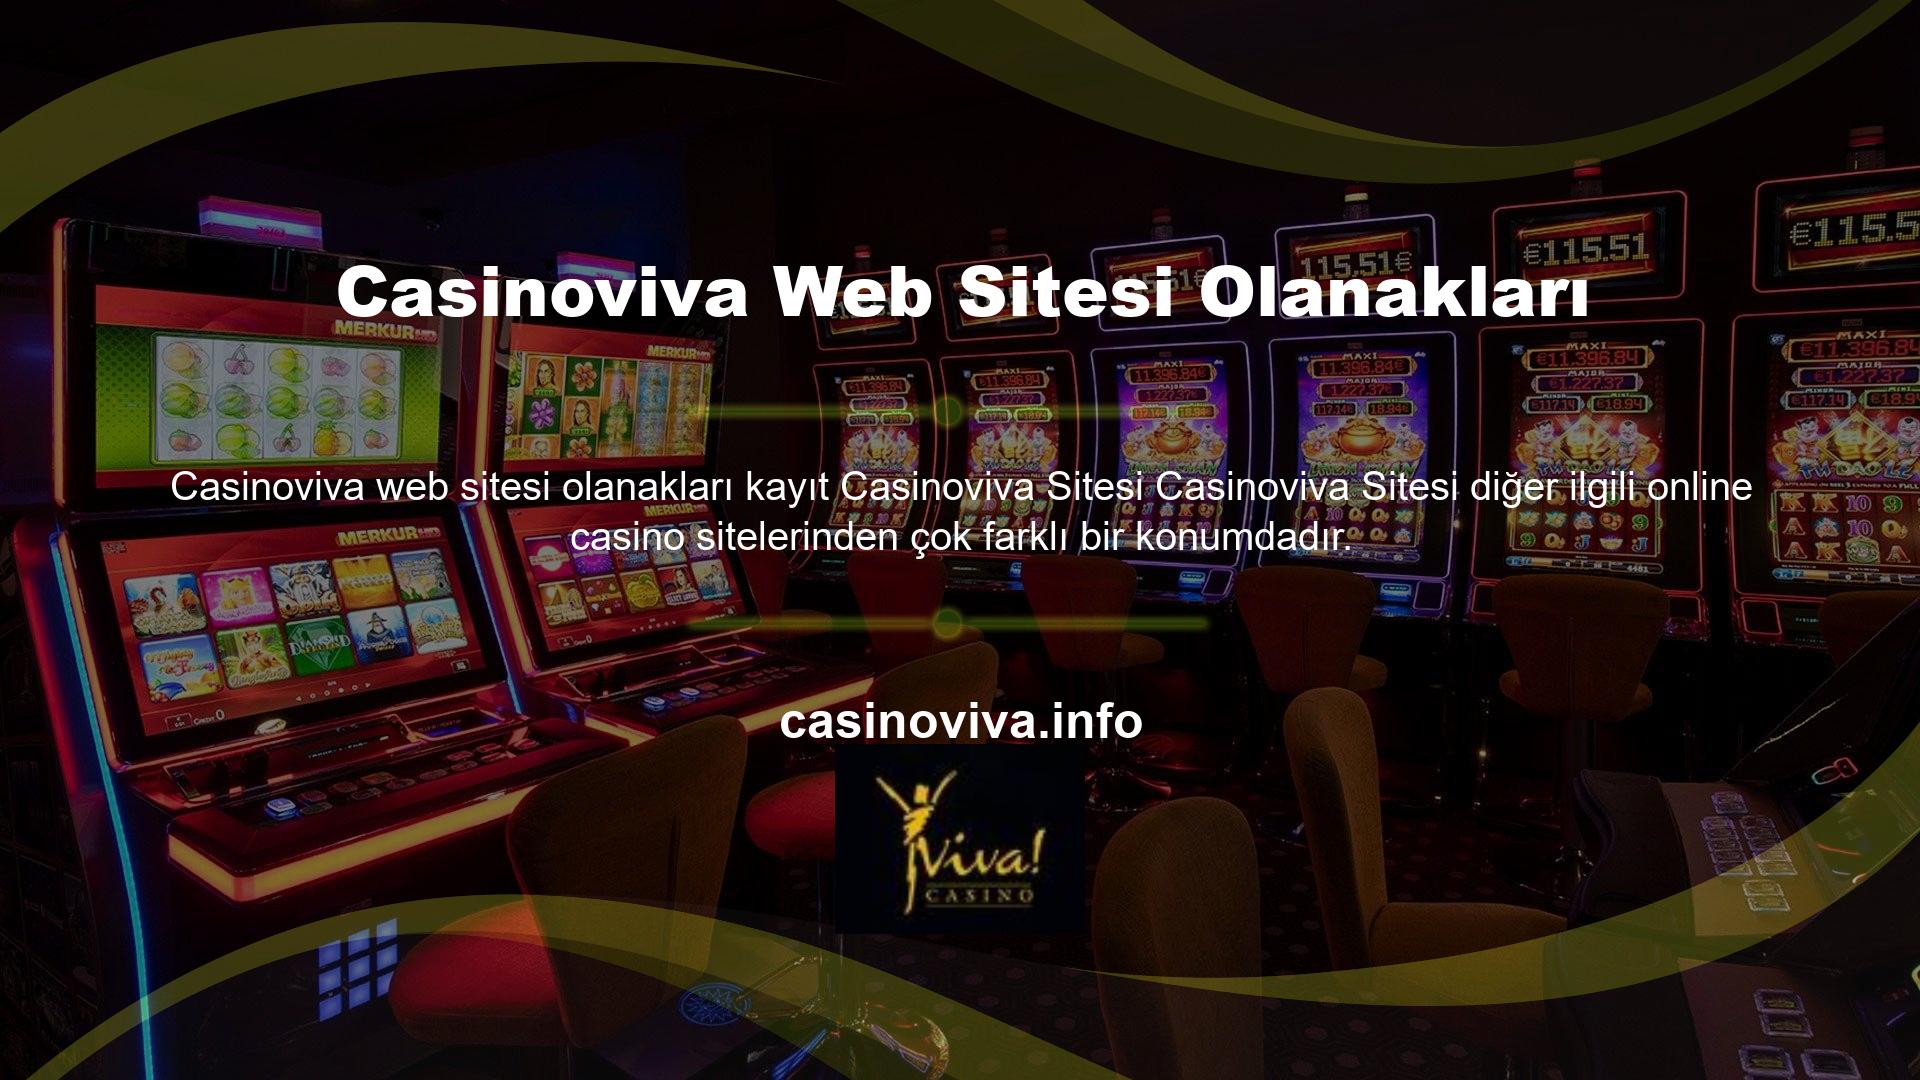 Casinoviva sitesi, yabancı menşeli ve mülkiyeti nedeniyle TİB tarafından yasa dışı casino sitesi olarak sınıflandırılmaktadır